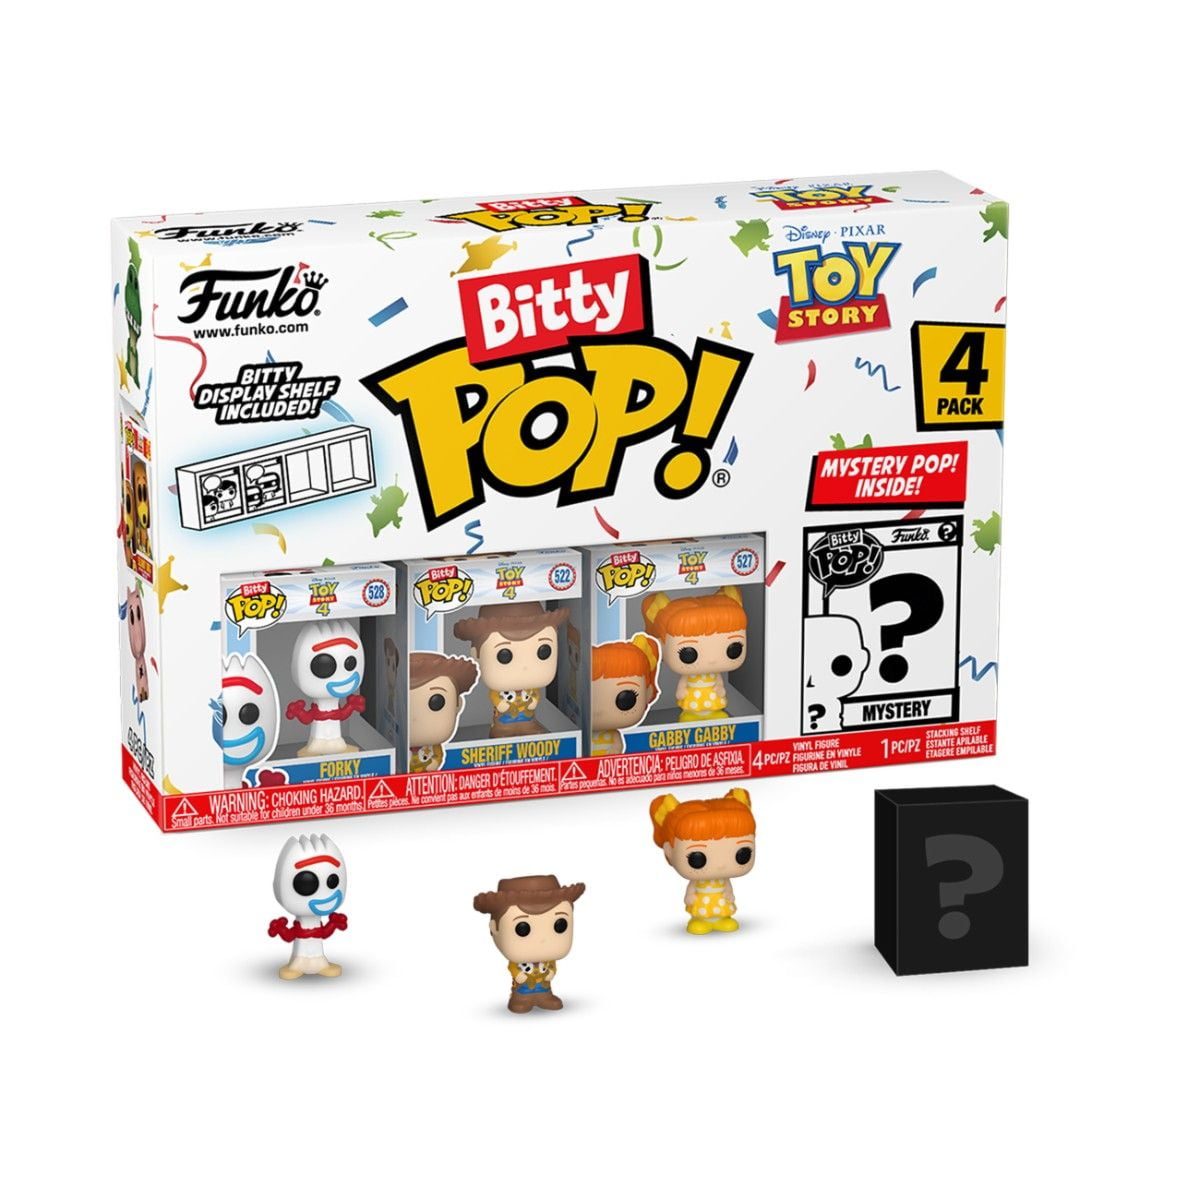 Toy Story - Forky 4PK Bitty POP!